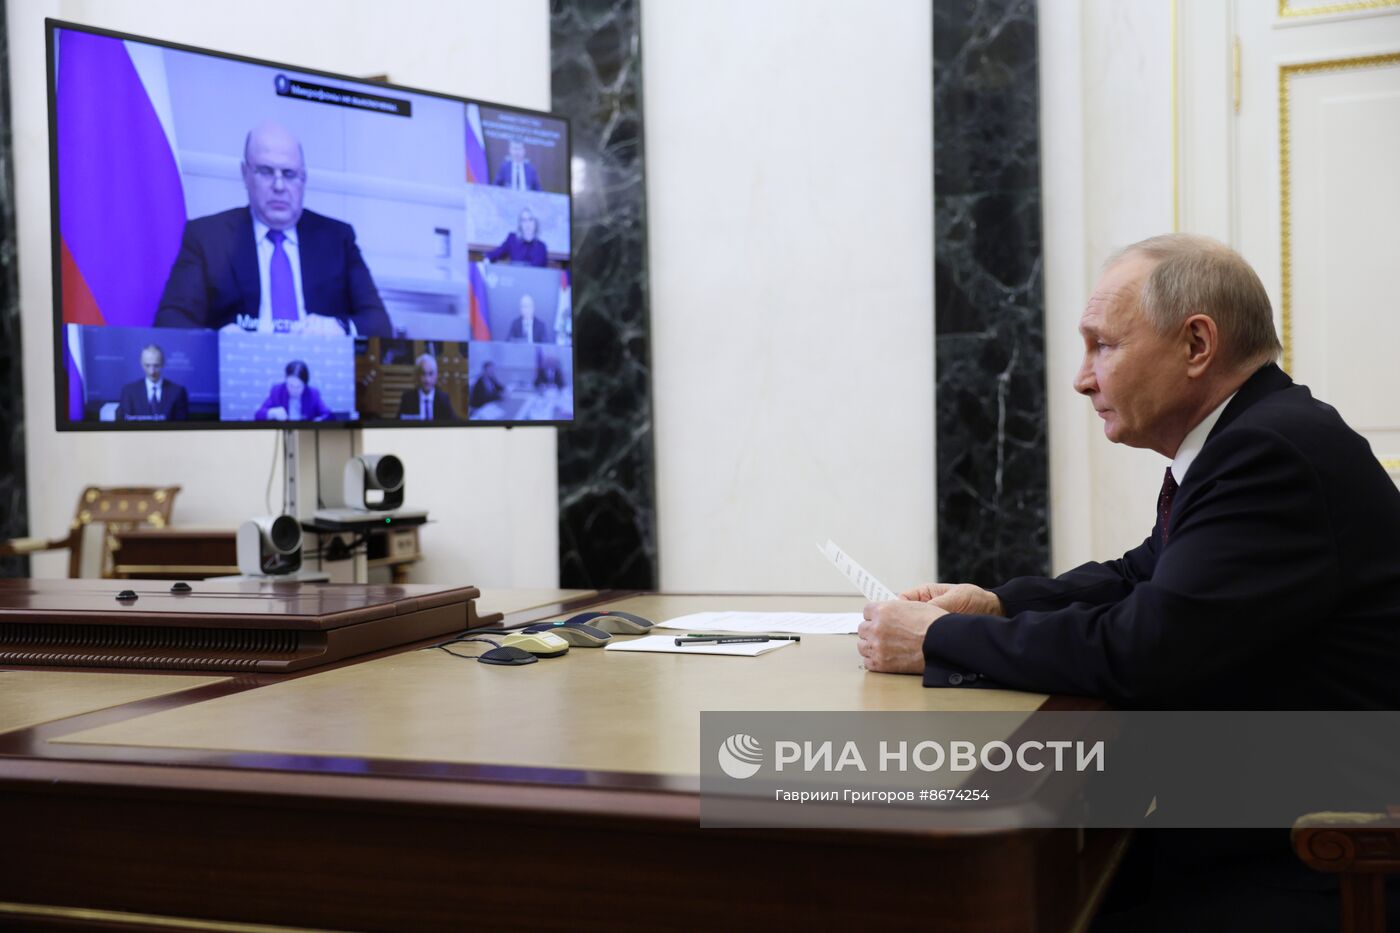 Президент Владимир Путин провел совещание по экономическим вопросам